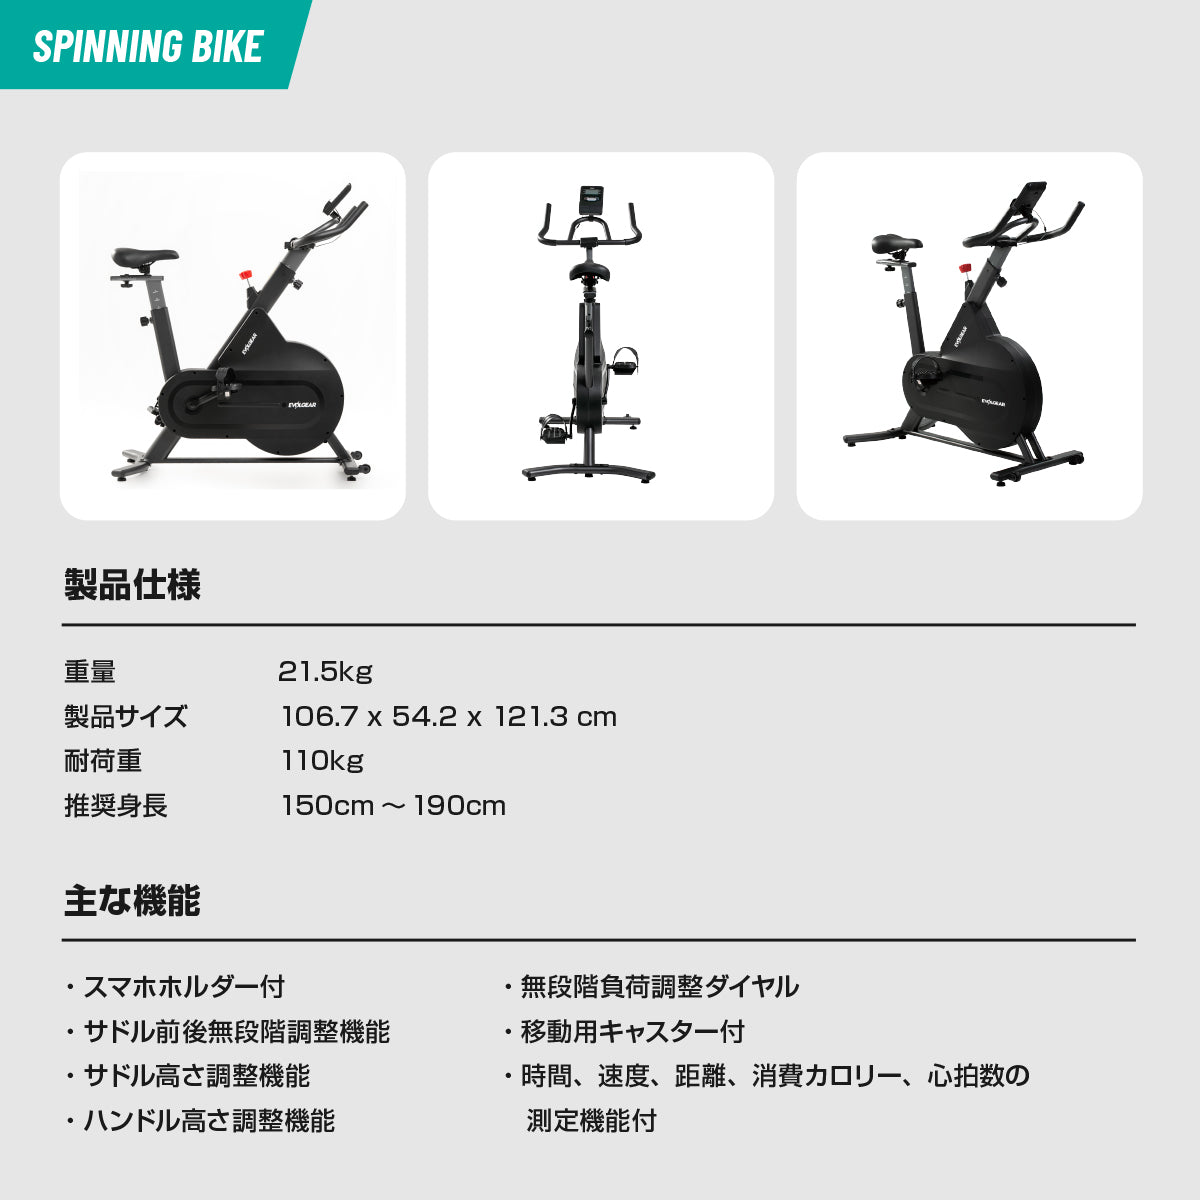 【NEW!】EMSスーツ+スピニングバイク セット